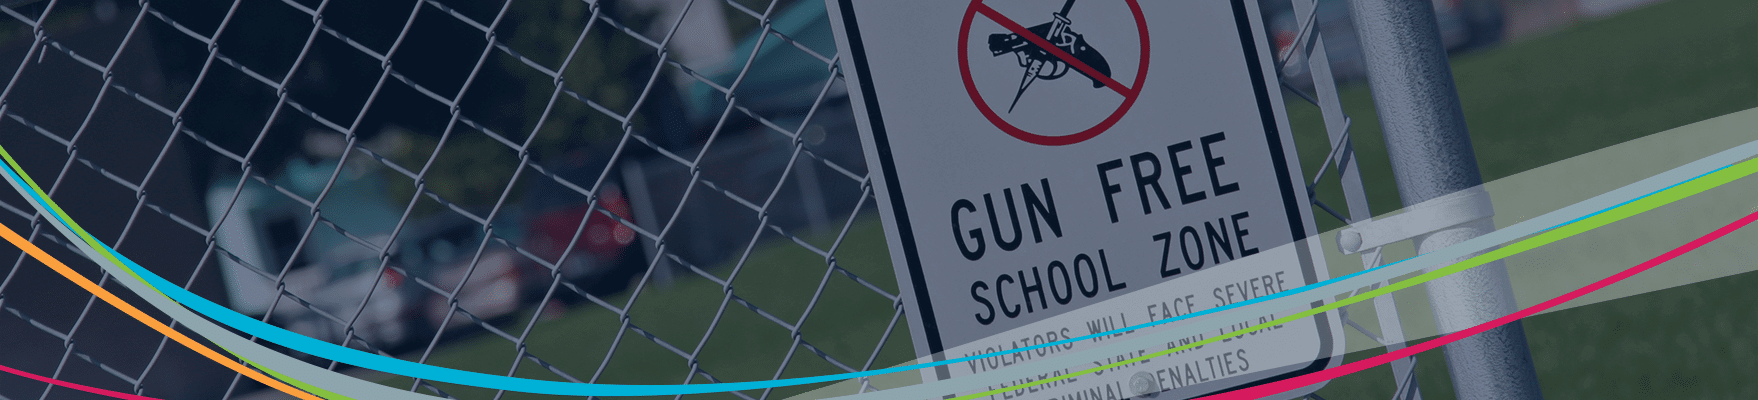 울타리에 총기 금지 구역 표시 학교 폭력 예방 헤더